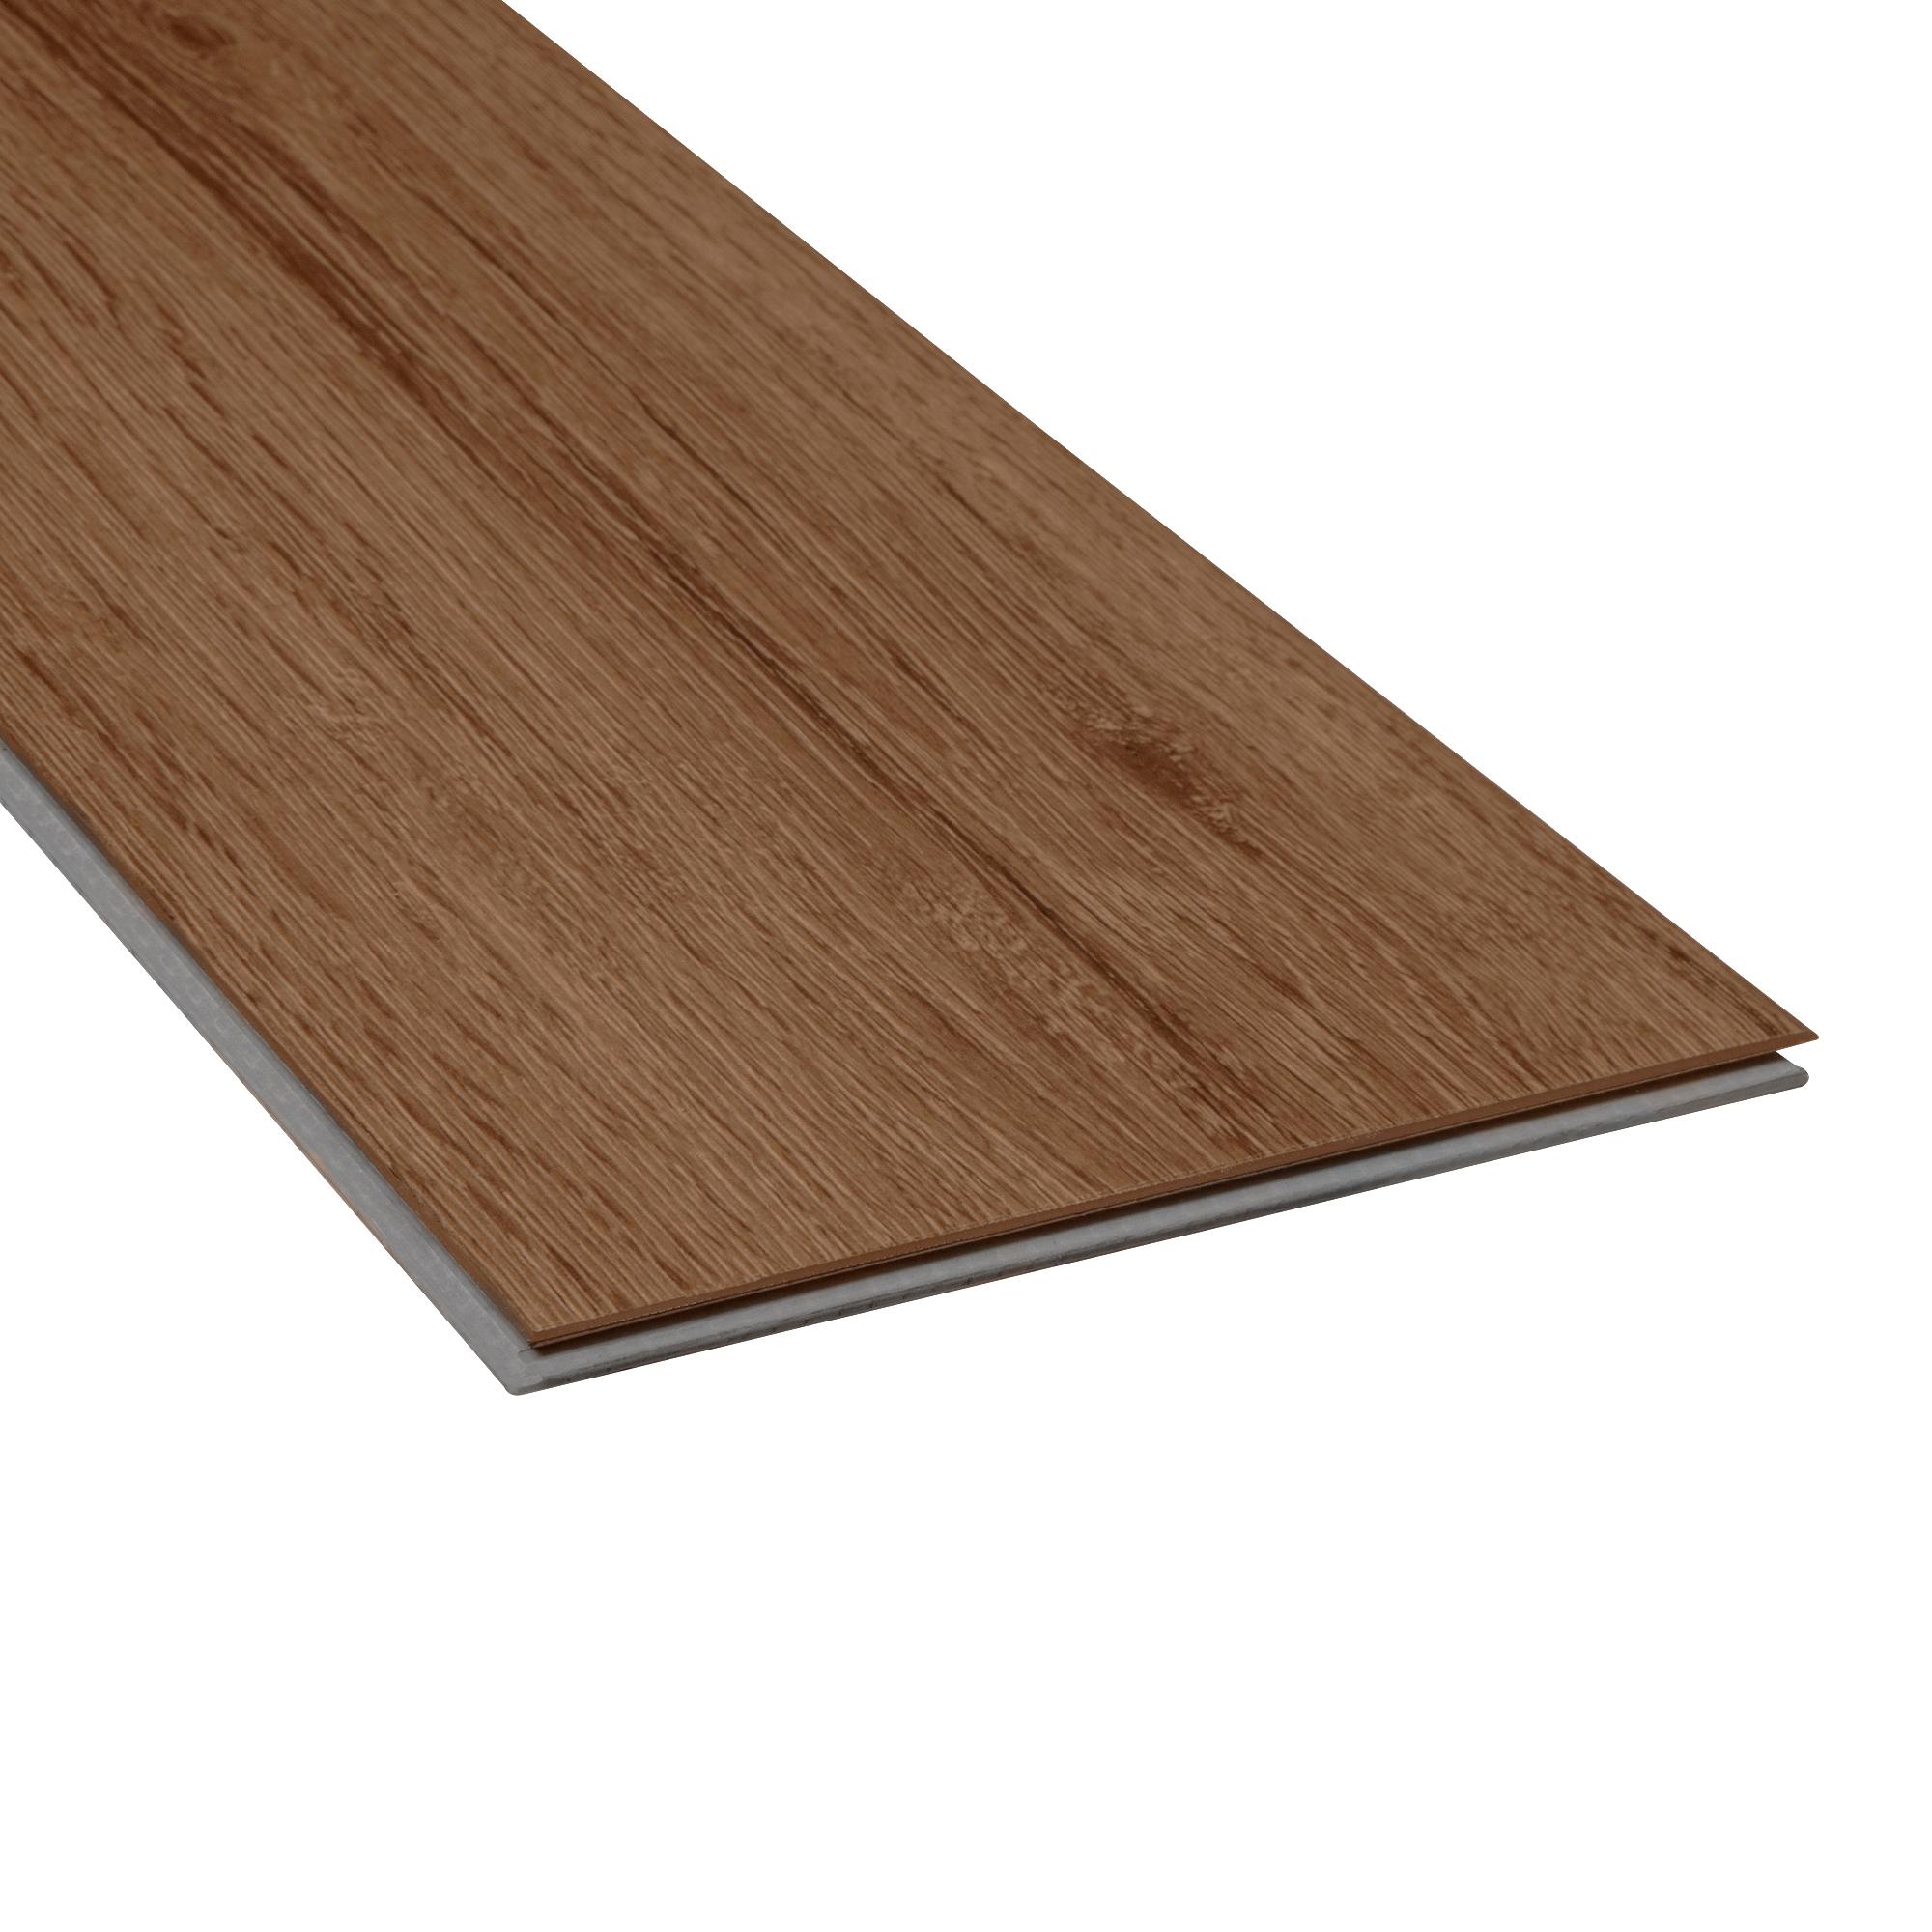 Mohawk 7.75x52 Waterproof Vinyl Plank Flooring in Pure Wheat Oak 4.2 mm  (26.91-sqft)/Carton) 